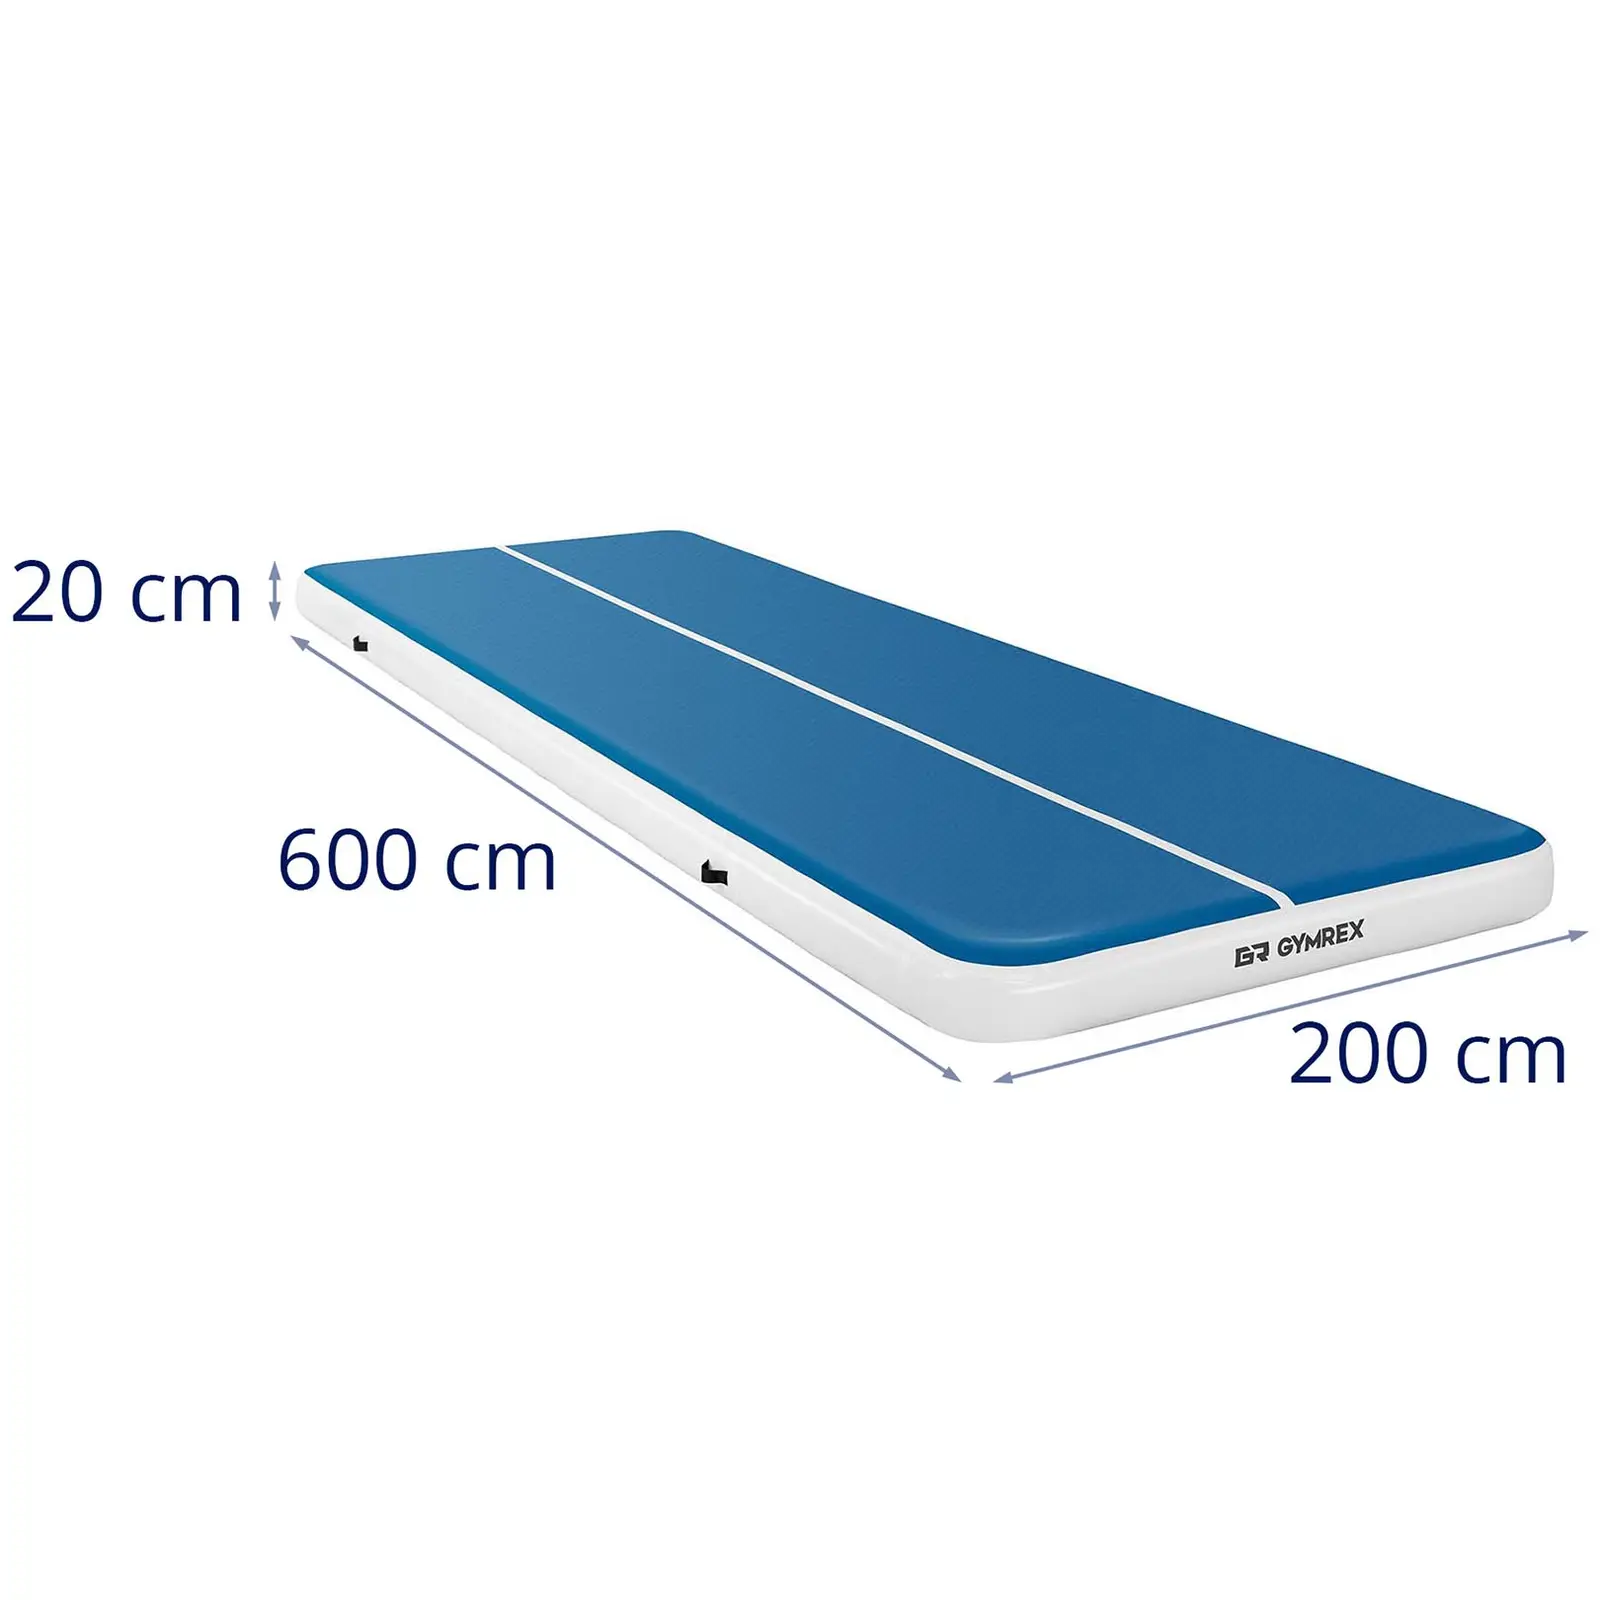 Tappeto da ginnastica gonfiabile - 600 x 200 x 20 cm - 400 kg - blu/bianco